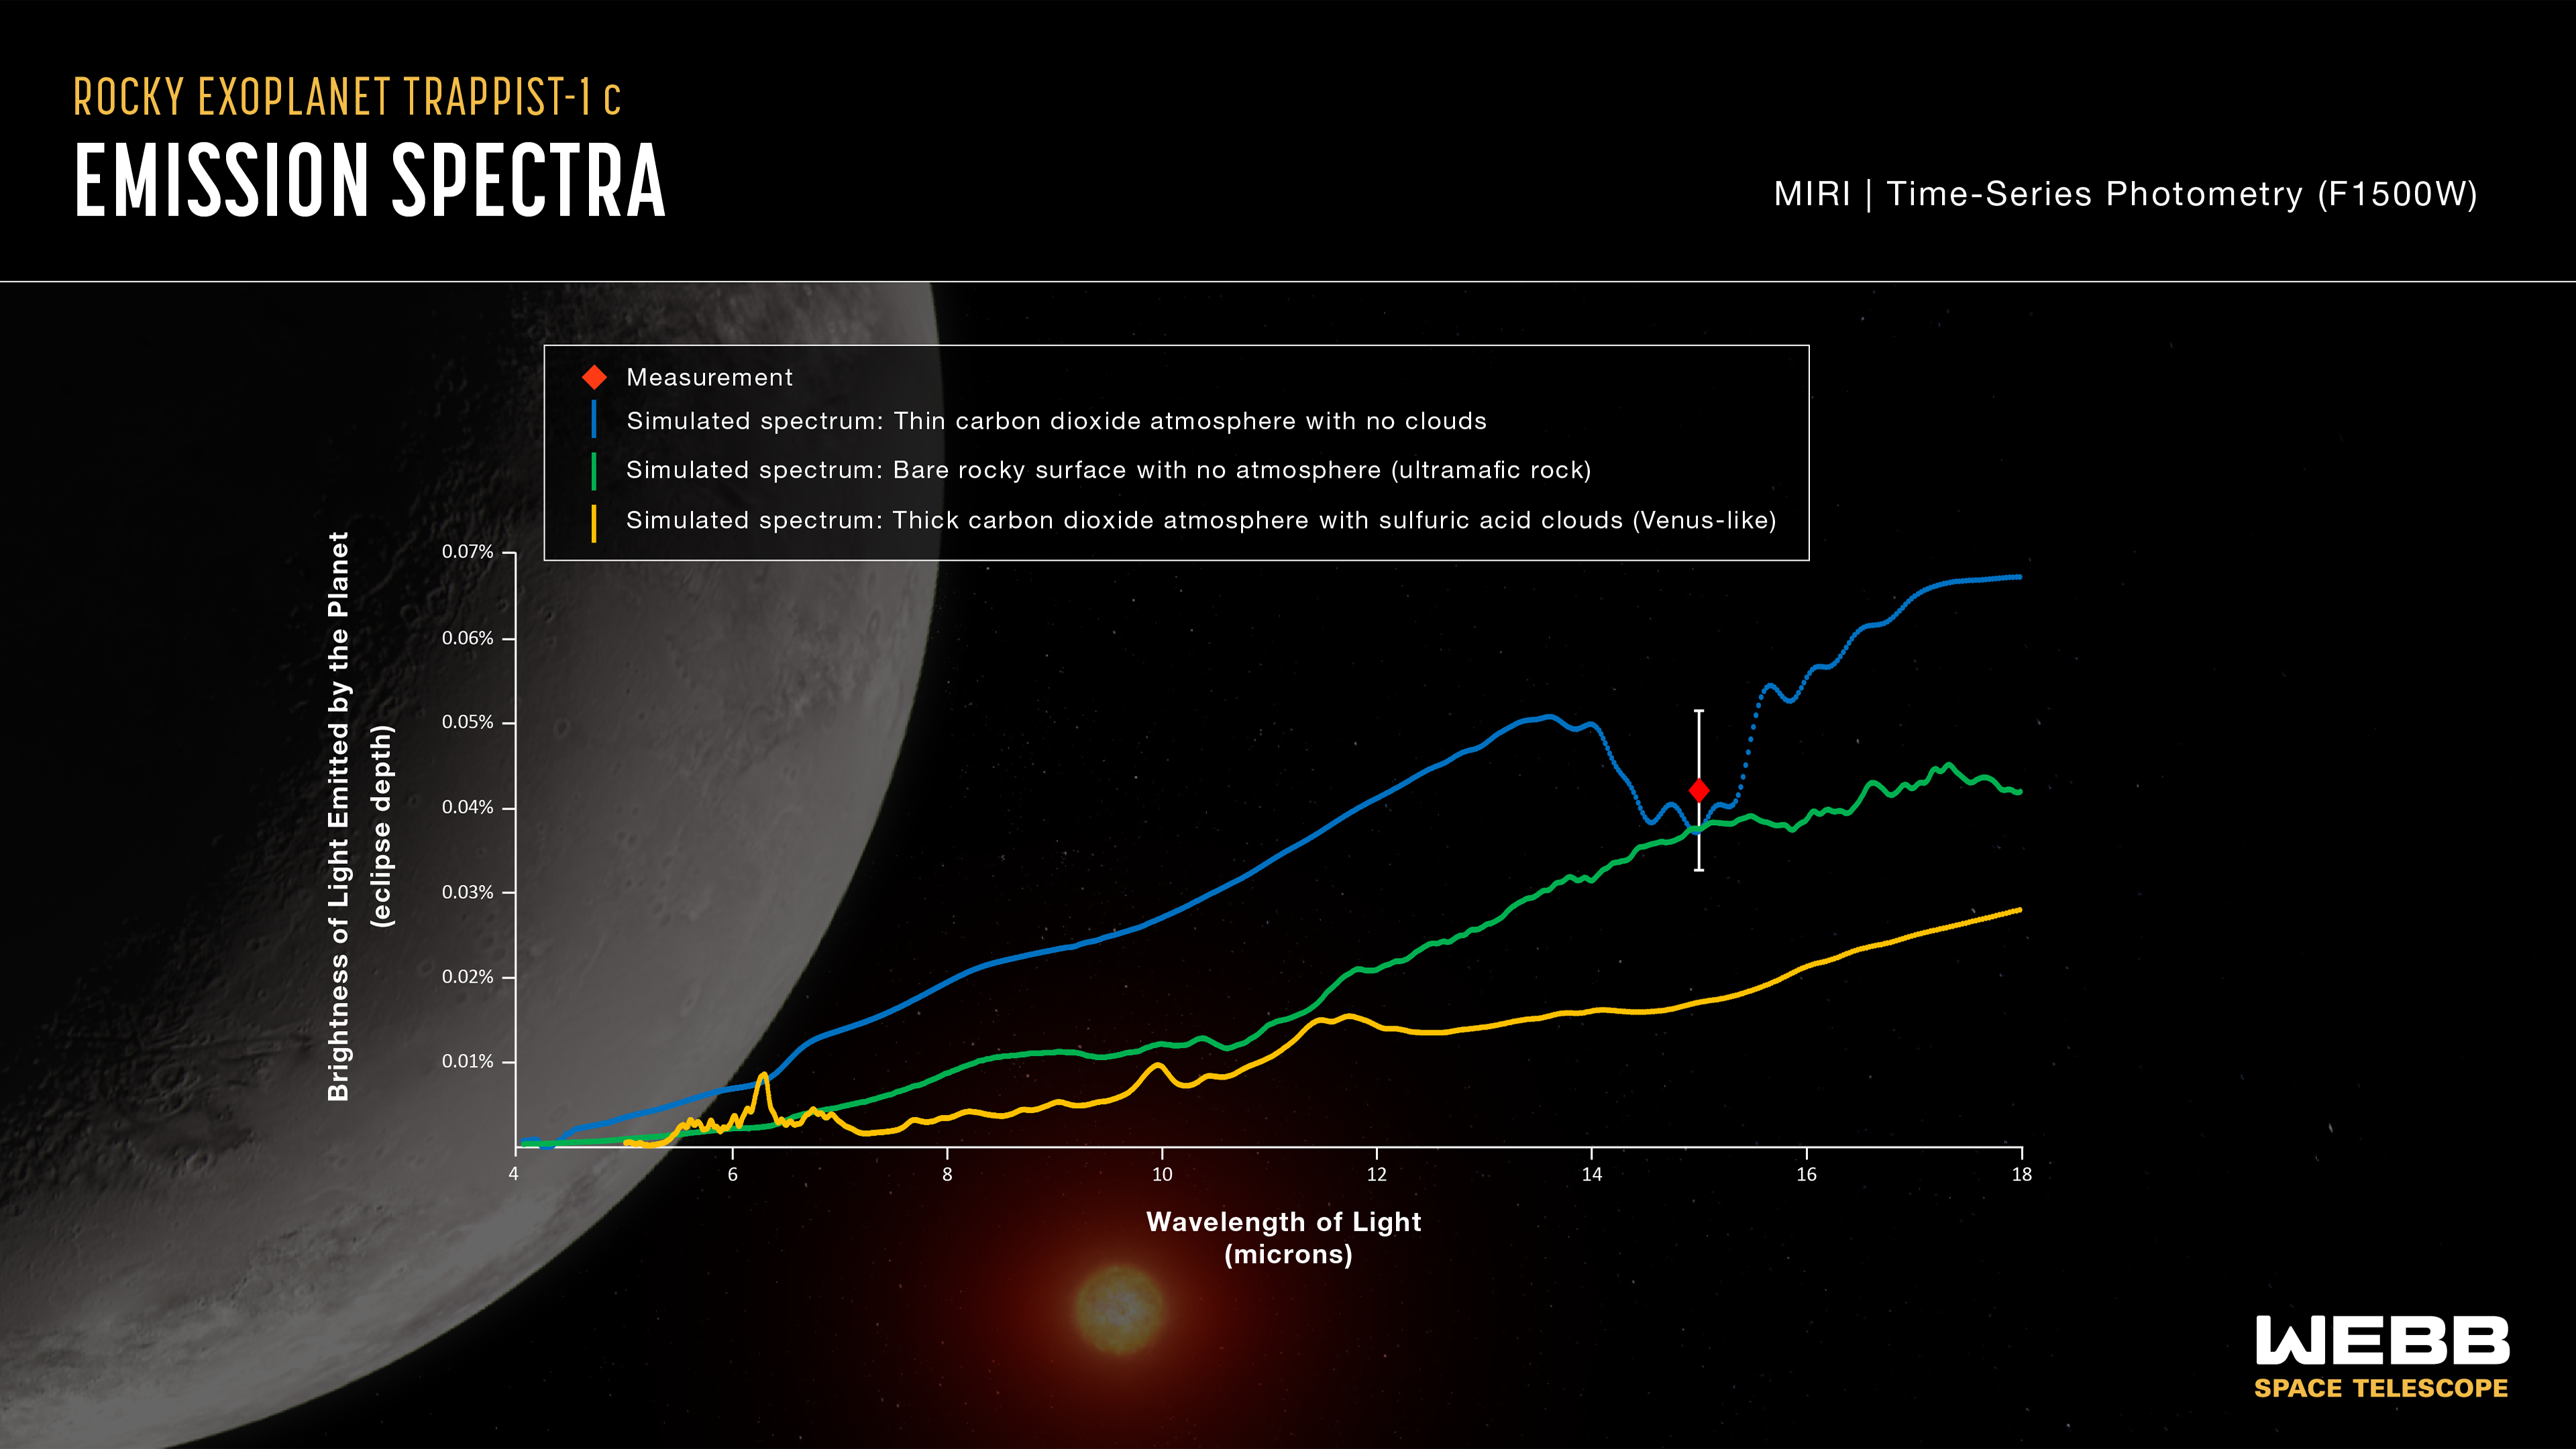 Porównanie pomiaru jasności egzoplanety TRAPPIST-1 c z trzema symulowanymi komputerowo modelami. Wartość obserwowana za pomocą Teleskopu Webba (czerwony romb) jest zgodna z modelem planety skalistej bez atmosfery (zielona linia) lub planety zawierającej bardzo rzadką atmosferę z CO2, ale bez chmur (niebieska linia). Natomiast mało jest prawdopodobna atmosfera podobna do Wenus (żółta linia) z grubą atmosferą składającą się z CO2 i z chmurami zawierającymi kwas siarkowy. Oś Y przedstawia jasność (czasami też określane pojęciem natężenia lub strumienia) jako głębokość zaćmienia, która jest różnicą pomiędzy sumaryczną jasnością gwiazdy i planety (gdy planeta jest obok gwiazdy) i jasnością samej gwiazdy (gdy planeta schowana jest za gwiazdą). Na rysunku jasność Y rośnie od dołu do góry – im głębsze zaćmienie, tym jaśniejsza jest planeta. Oś X prezentuje długość fali (kolor) obserwowanego światła. Długości fali na tym wykresie dotyczą podczerwieni, czyli zakresu fal elektromagnetycznych nie możliwego do zaobserwowania gołym okiem. Niebieska linia prezentuje model widma emisyjnego dla dziennej strony egzoplanety zawierającej w atmosferze tlen, 0,01% CO2 przy ciśnieniu na powierzchni 0,1 bara (dla porównania ta atmosfera jest znacznie rzadsza niż atmosfera Ziemi, która zawiera azot, tlen, 0,04% CO2, przy ciśnieniu na powierzchni 1 bar). Zielona linia prezentuje model widma emisyjnego dla dziennej strony egzoplanety, która nie posiada atmosfery i powierzchnia zawiera skały ultramaficzne. Pomarańczowa linia prezentuje model widma emisyjnego dla dziennej strony egzoplanety podobnej do Wenus z atmosferą zawierającą 96,5% CO2 i chmury z kwasem siarkowym oraz ciśnieniem na powierzchni 10 barów. Źródło: NASA, ESA, CSA, J. Olmsted (STScI), S. Zieba (MPI-A), L. Kreidberg (MPI-A)